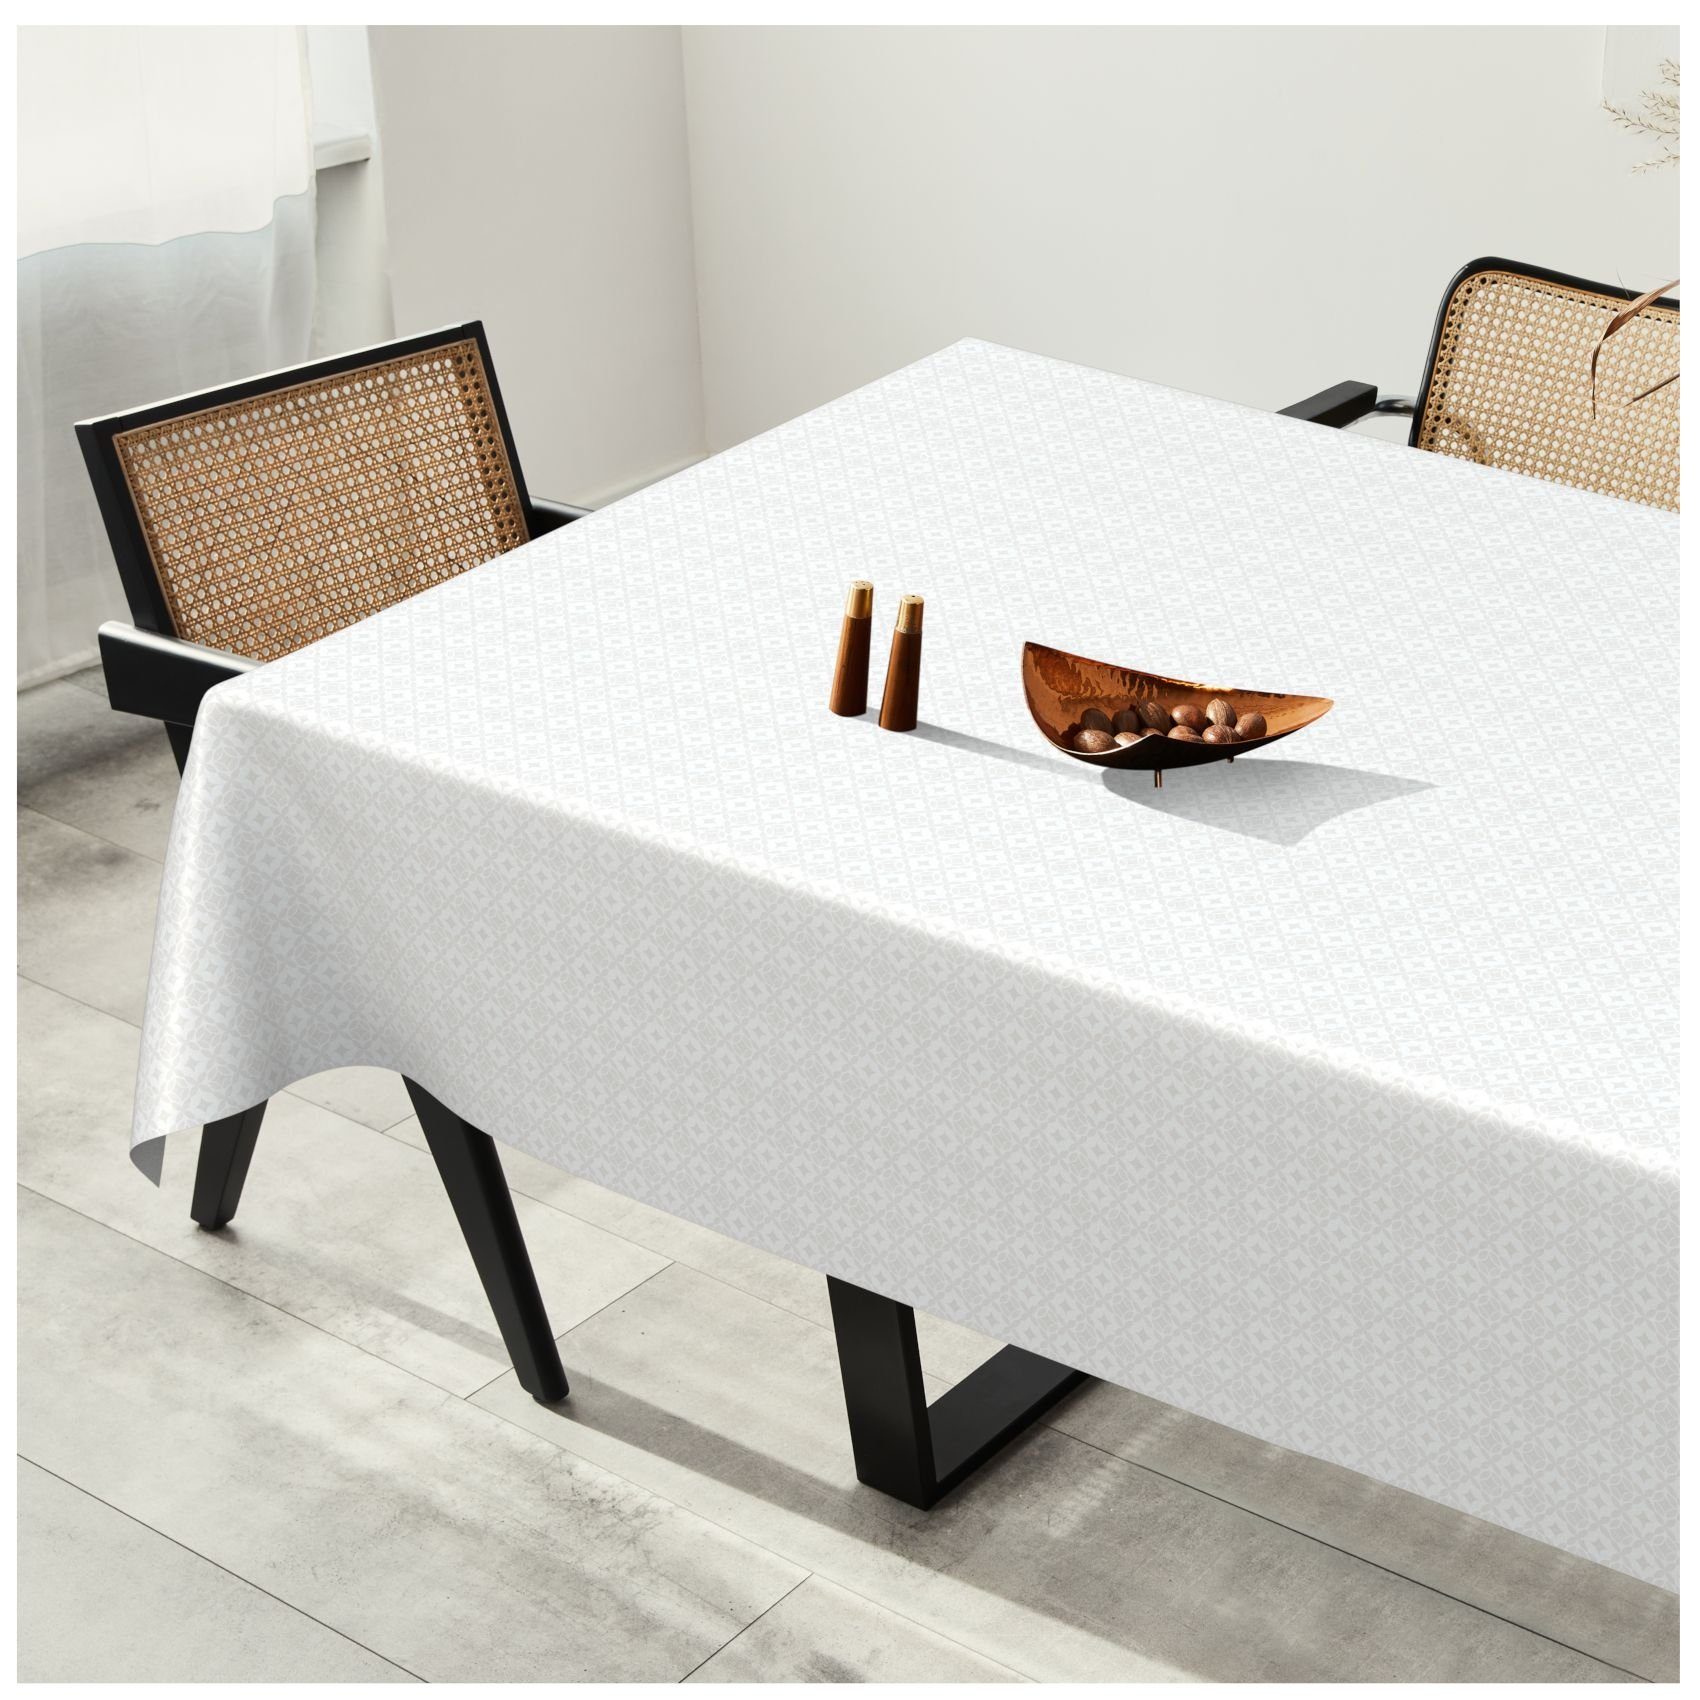 ANRO Tischdecke Tischdecke Wachstuch MIMOSA Wasserabweisend, Robust Einfarbig Glatt Weiß